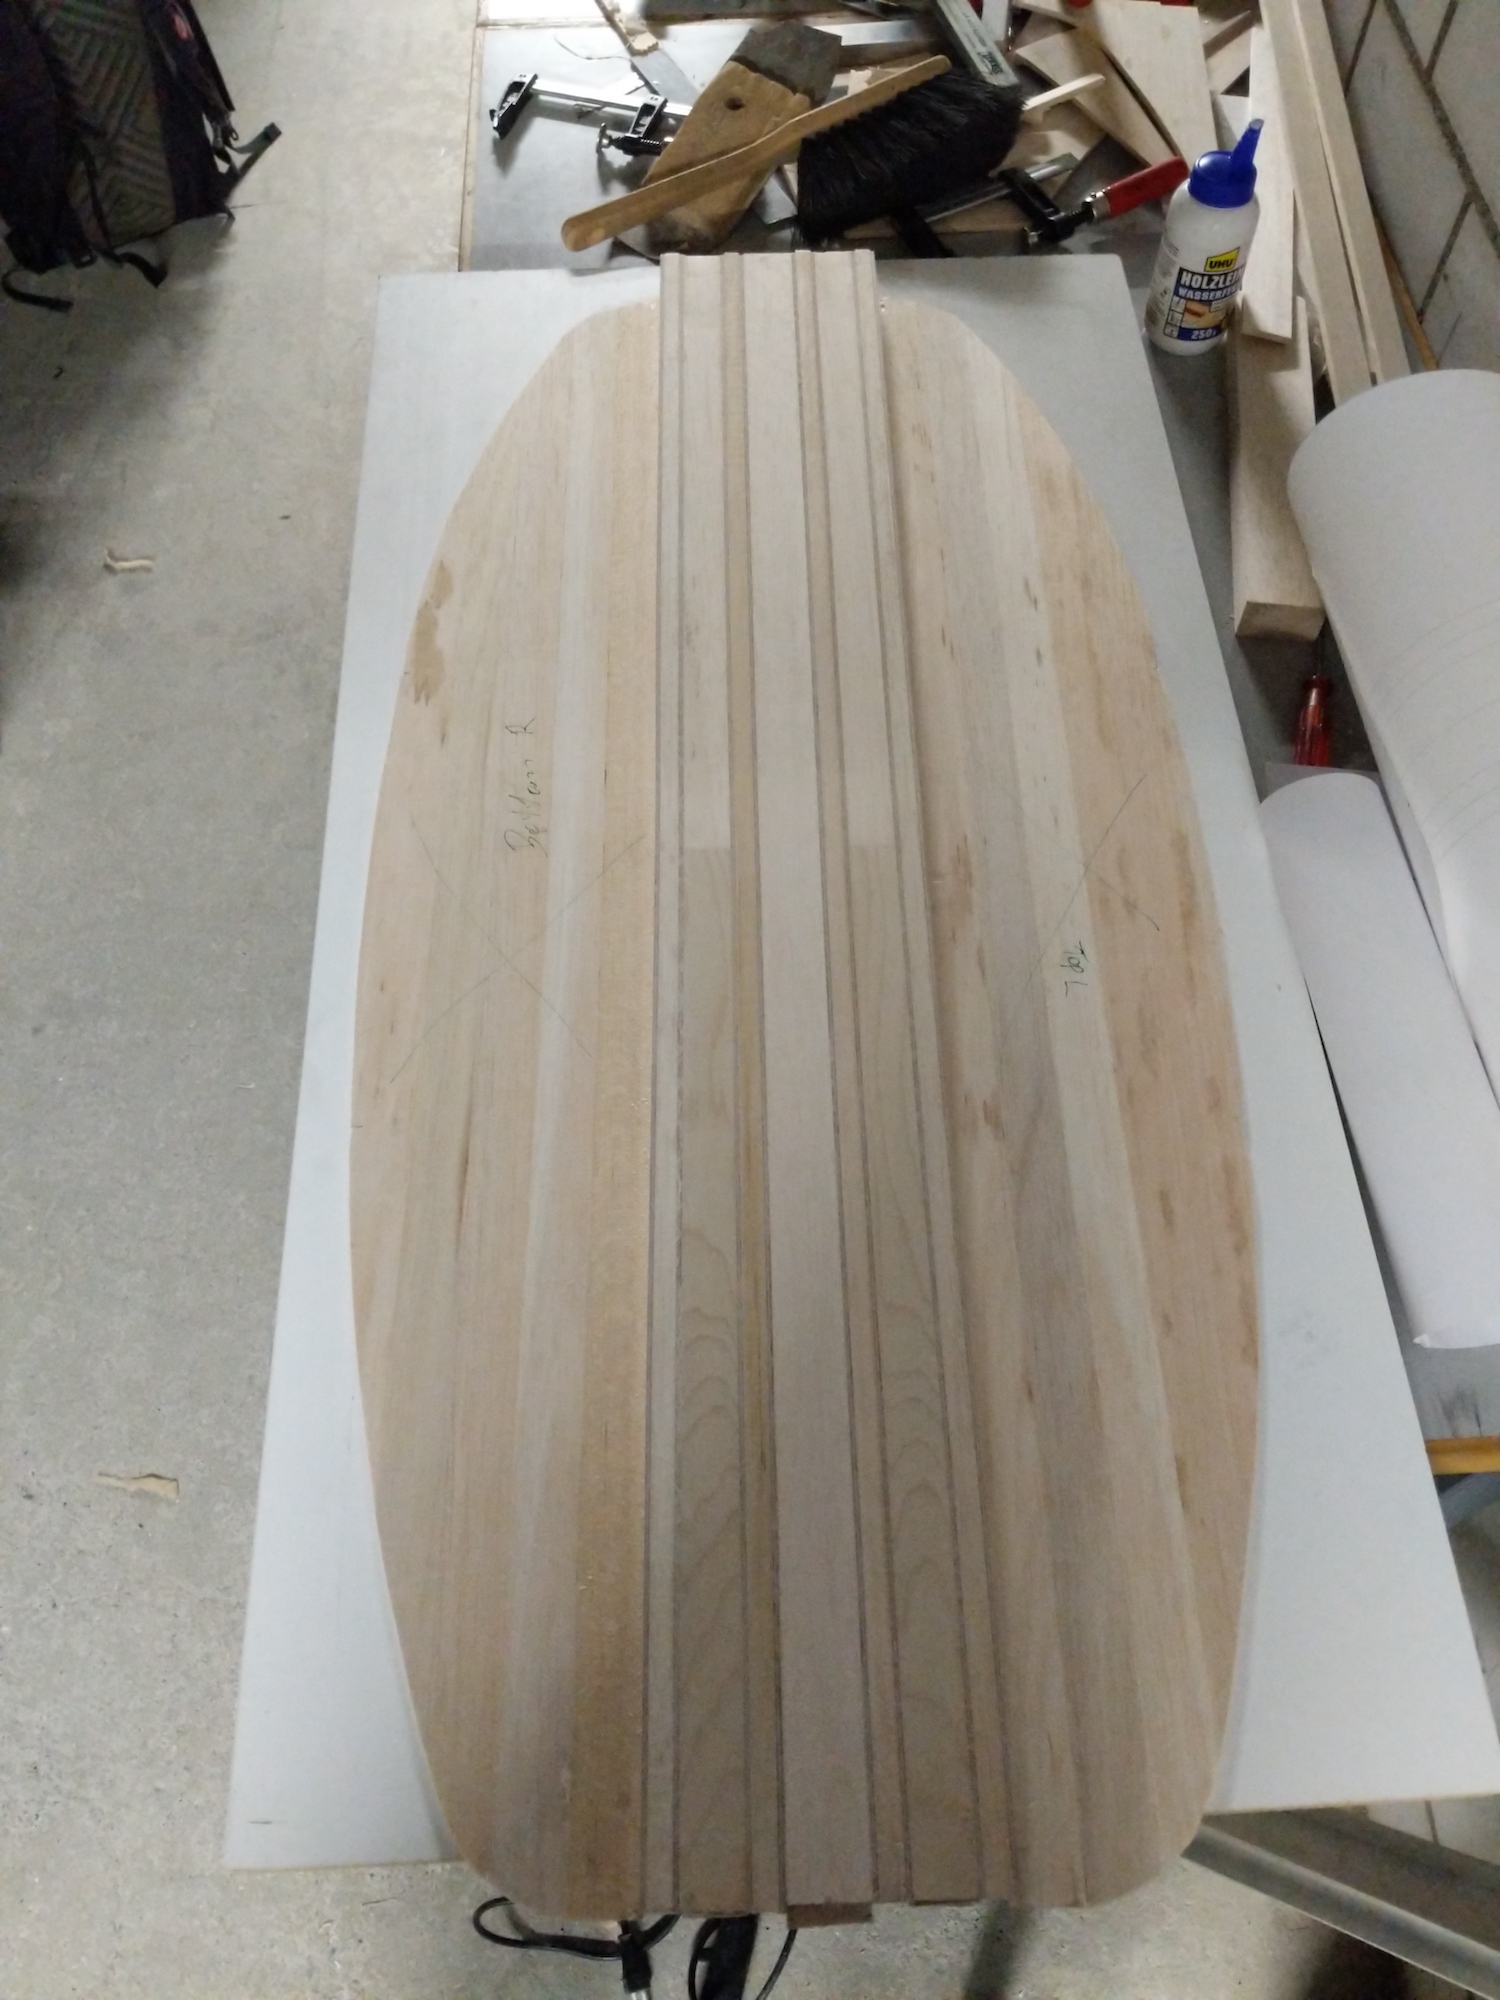 Stringers and deck start looking like a surfboard (inside board)